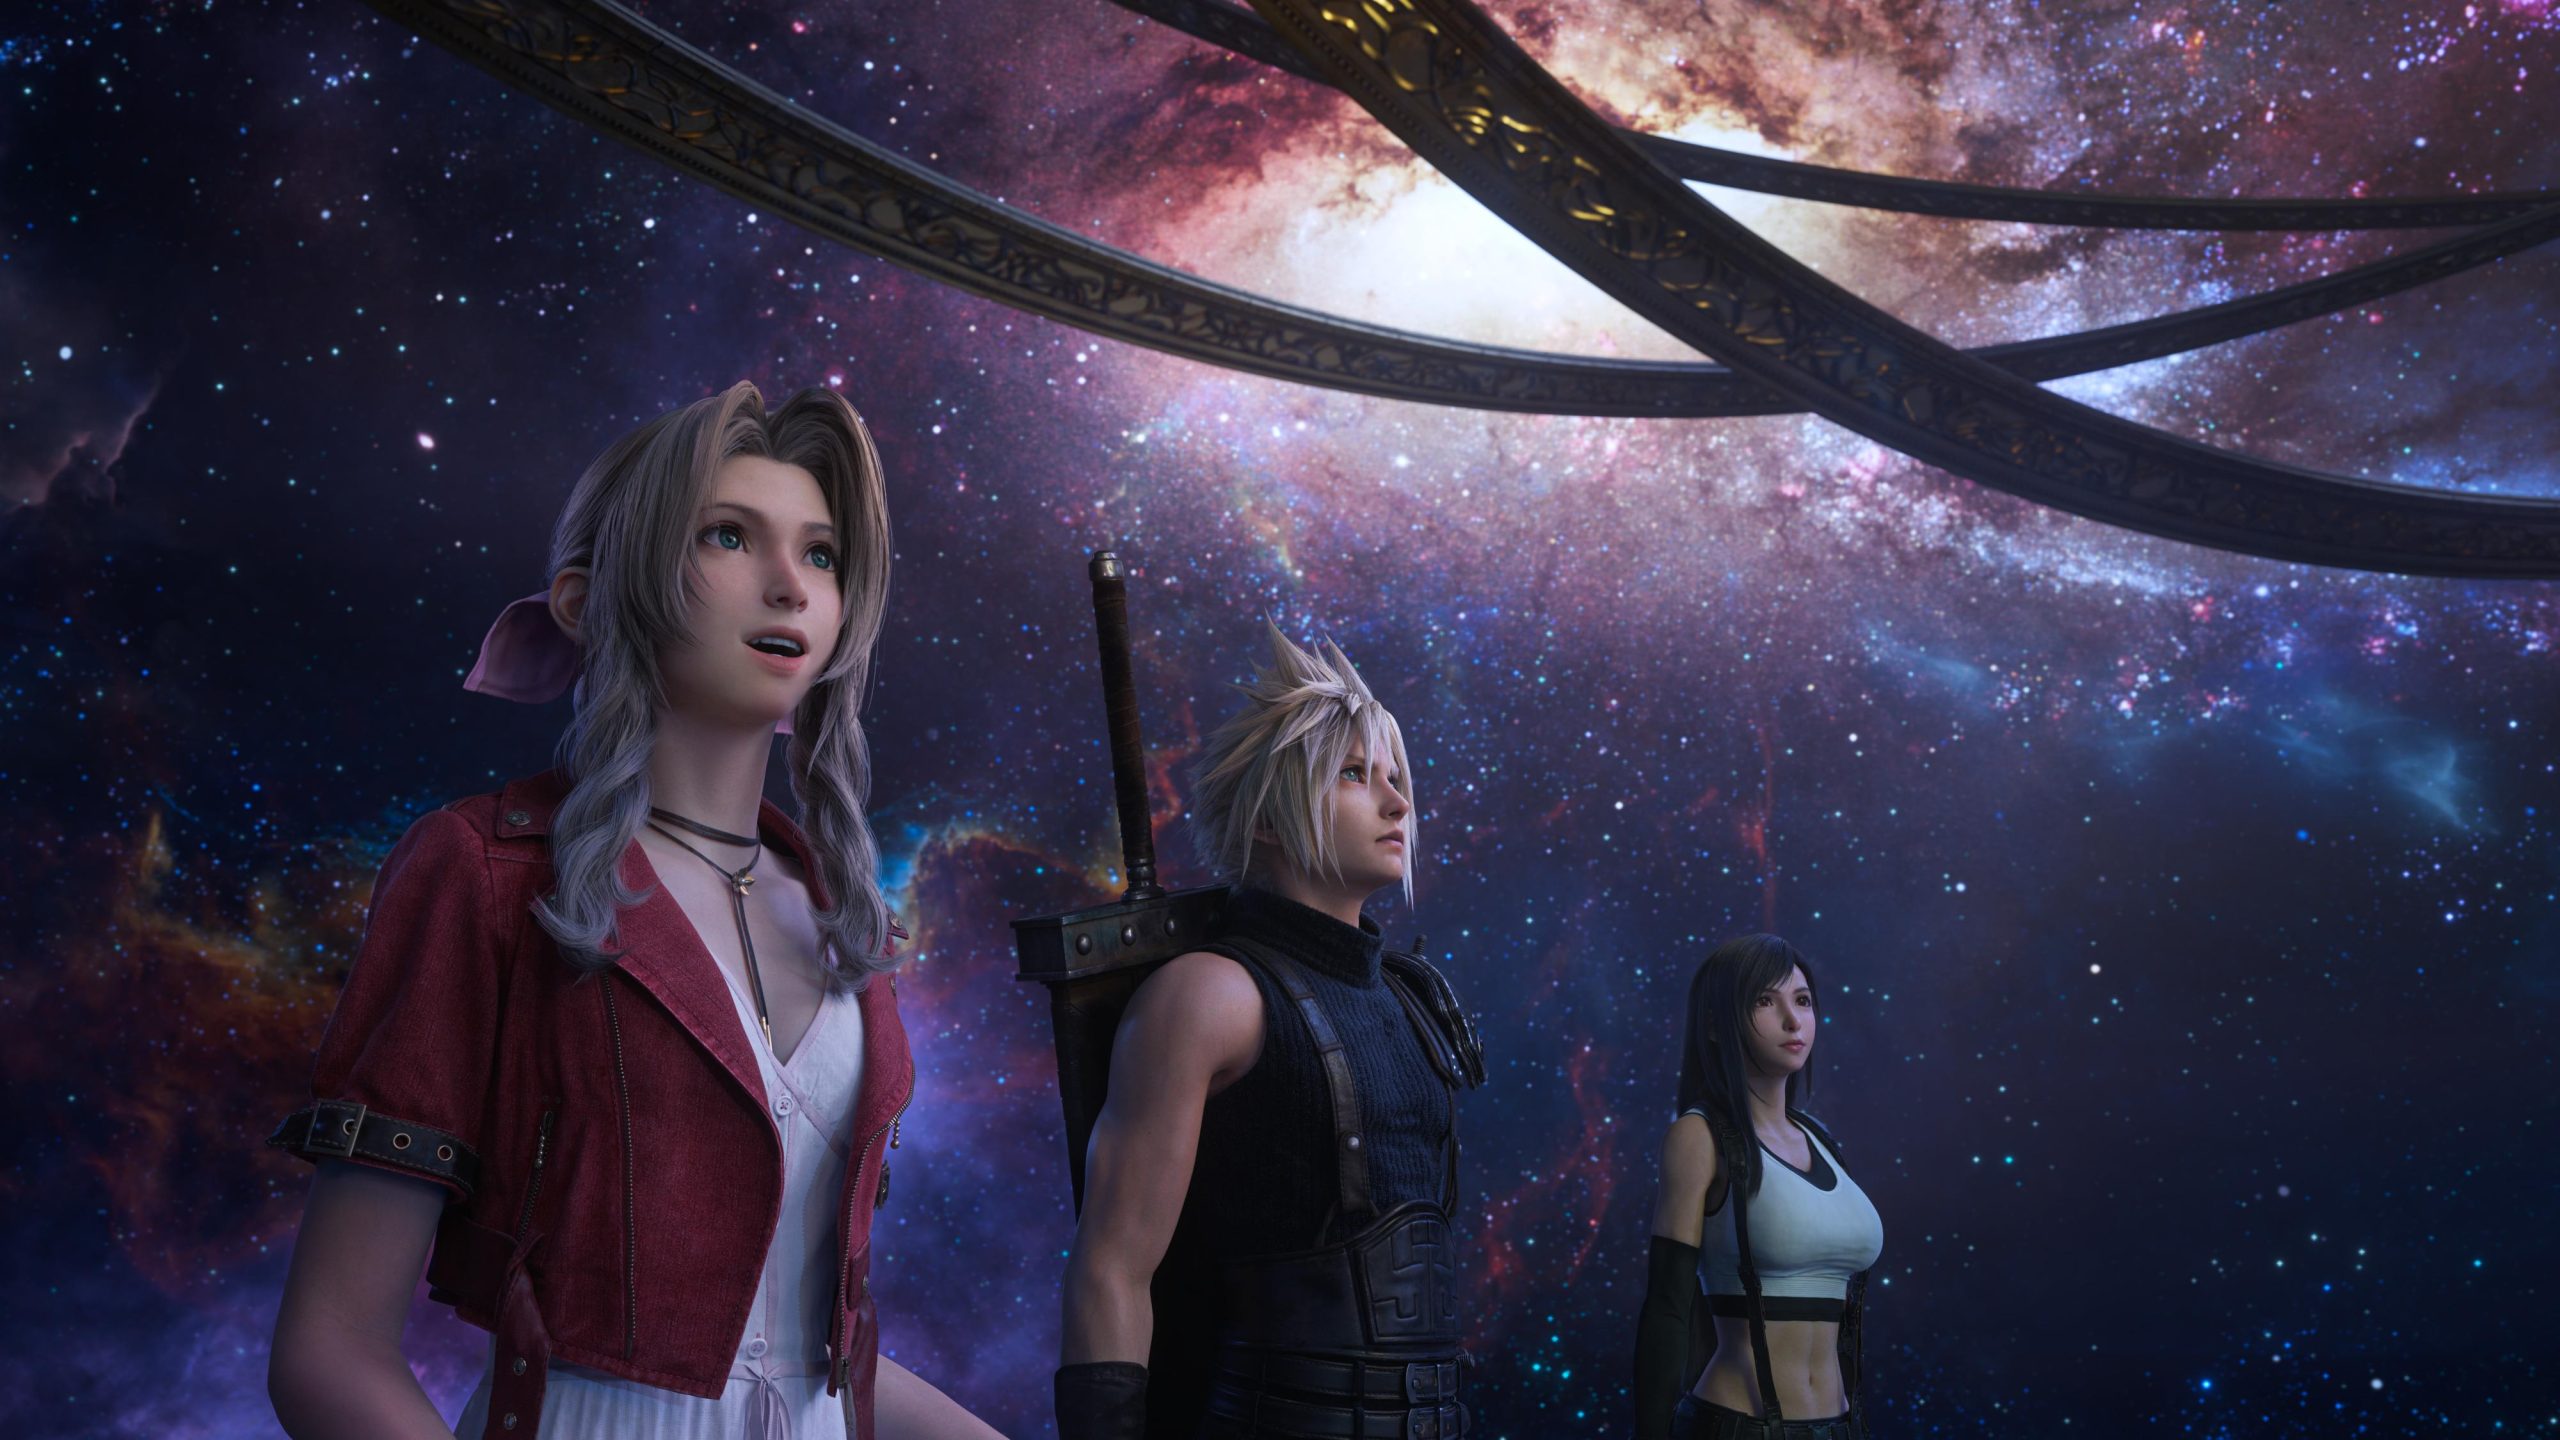 Final Fantasy VII Rebirth comparte el arte conceptual de Tifa